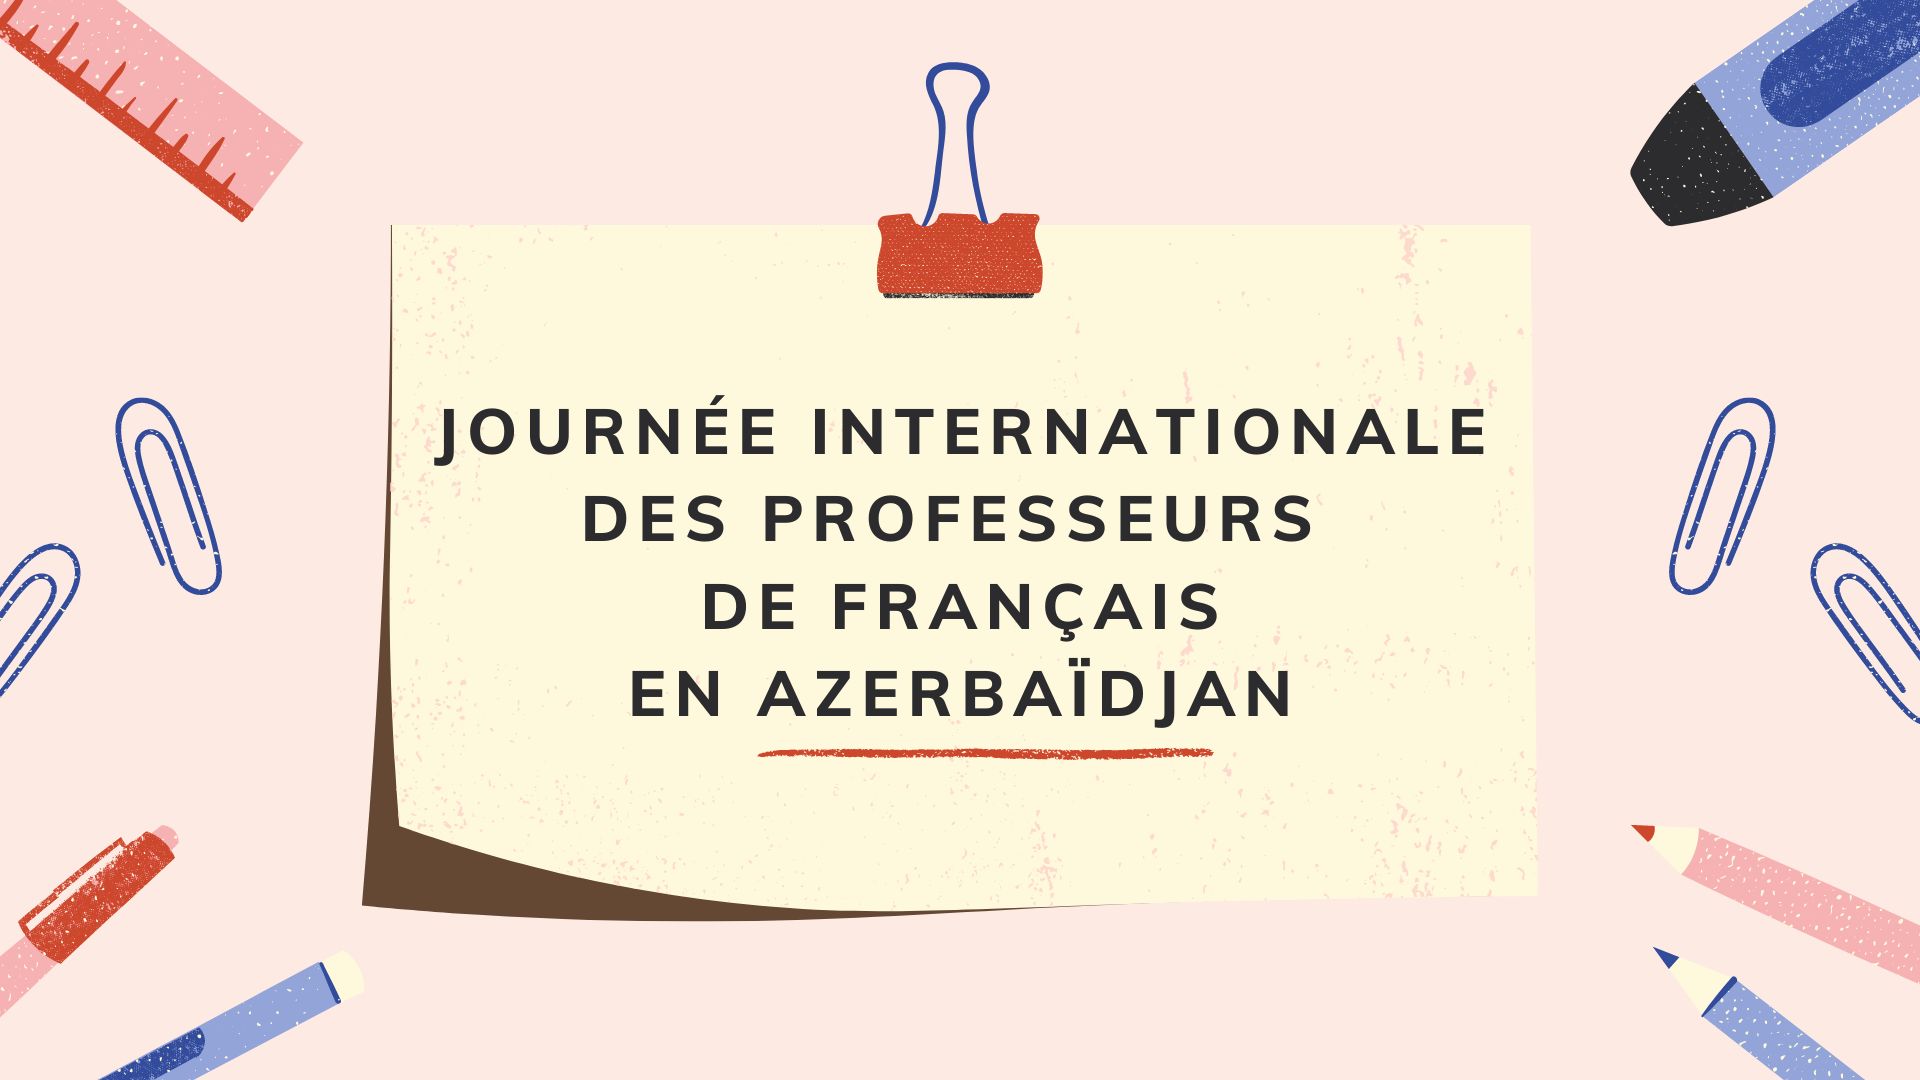 La journée internationale des professeurs de français en Azerbaidjan